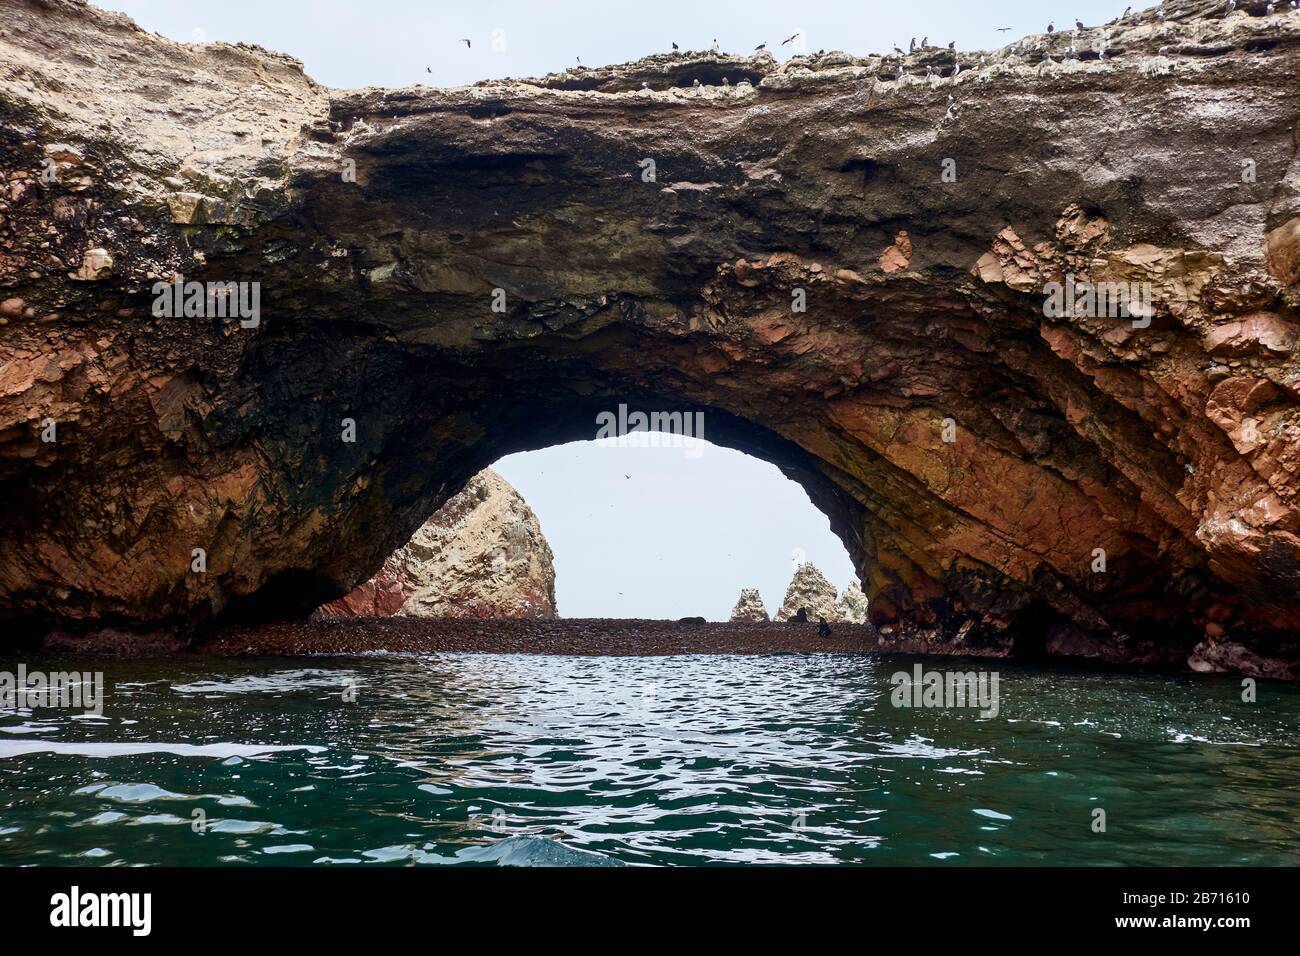 Cave arch at Ballestas Islands, Paracas Stock Photo